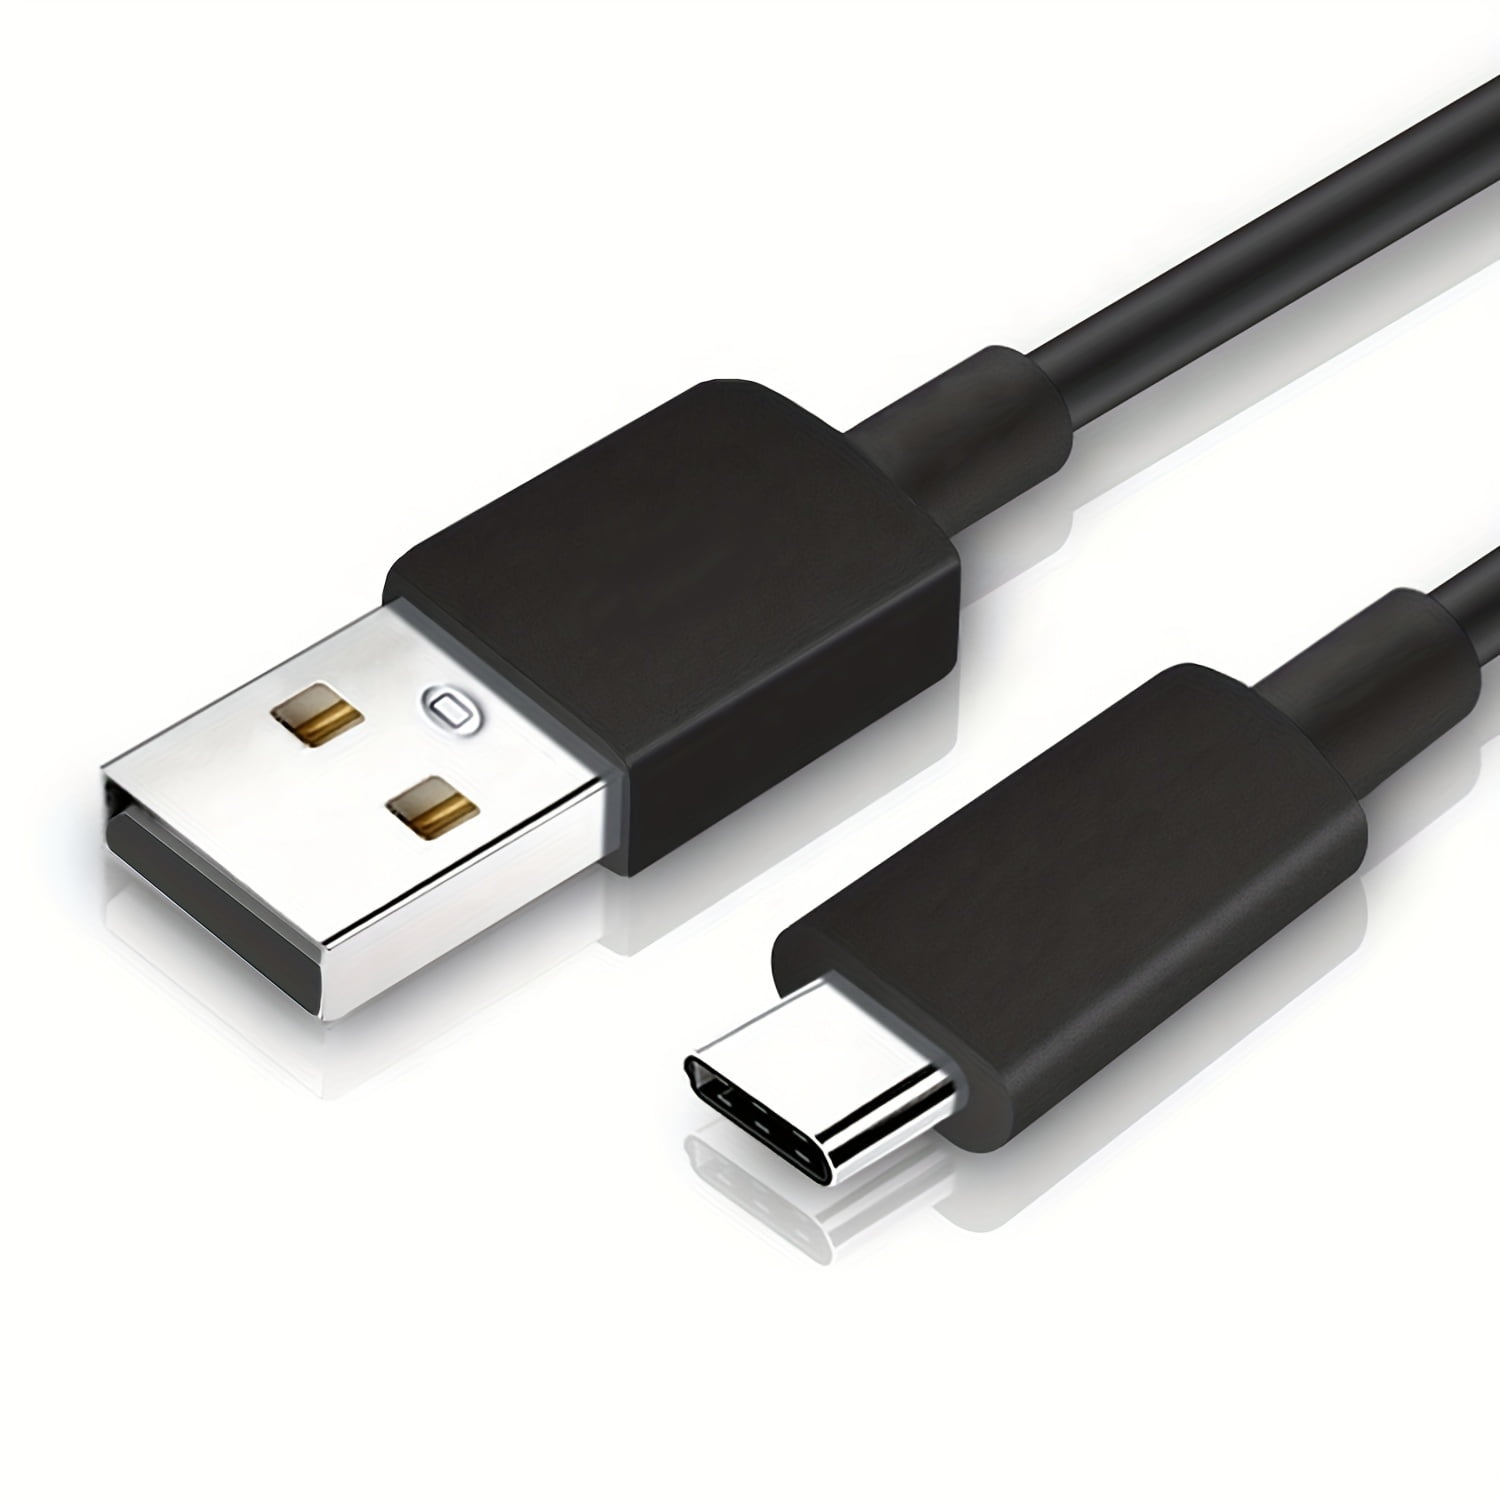 Cable USB + Chargeur Secteur Noir pour Samsung Galaxy J3 2017 J330